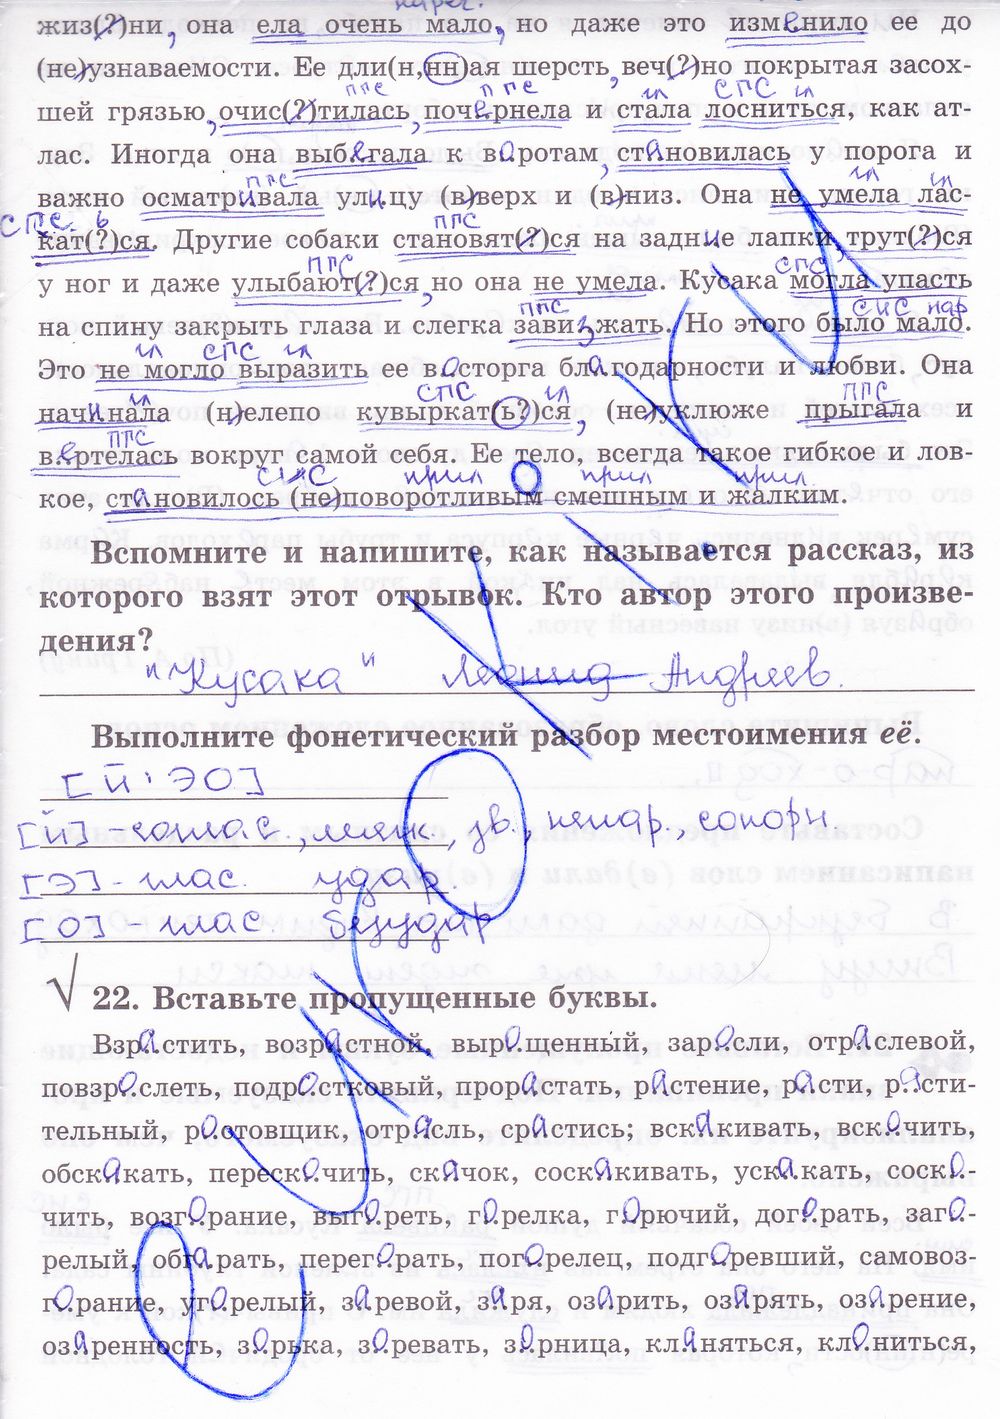 ГДЗ Русский язык 8 класс - стр. 22